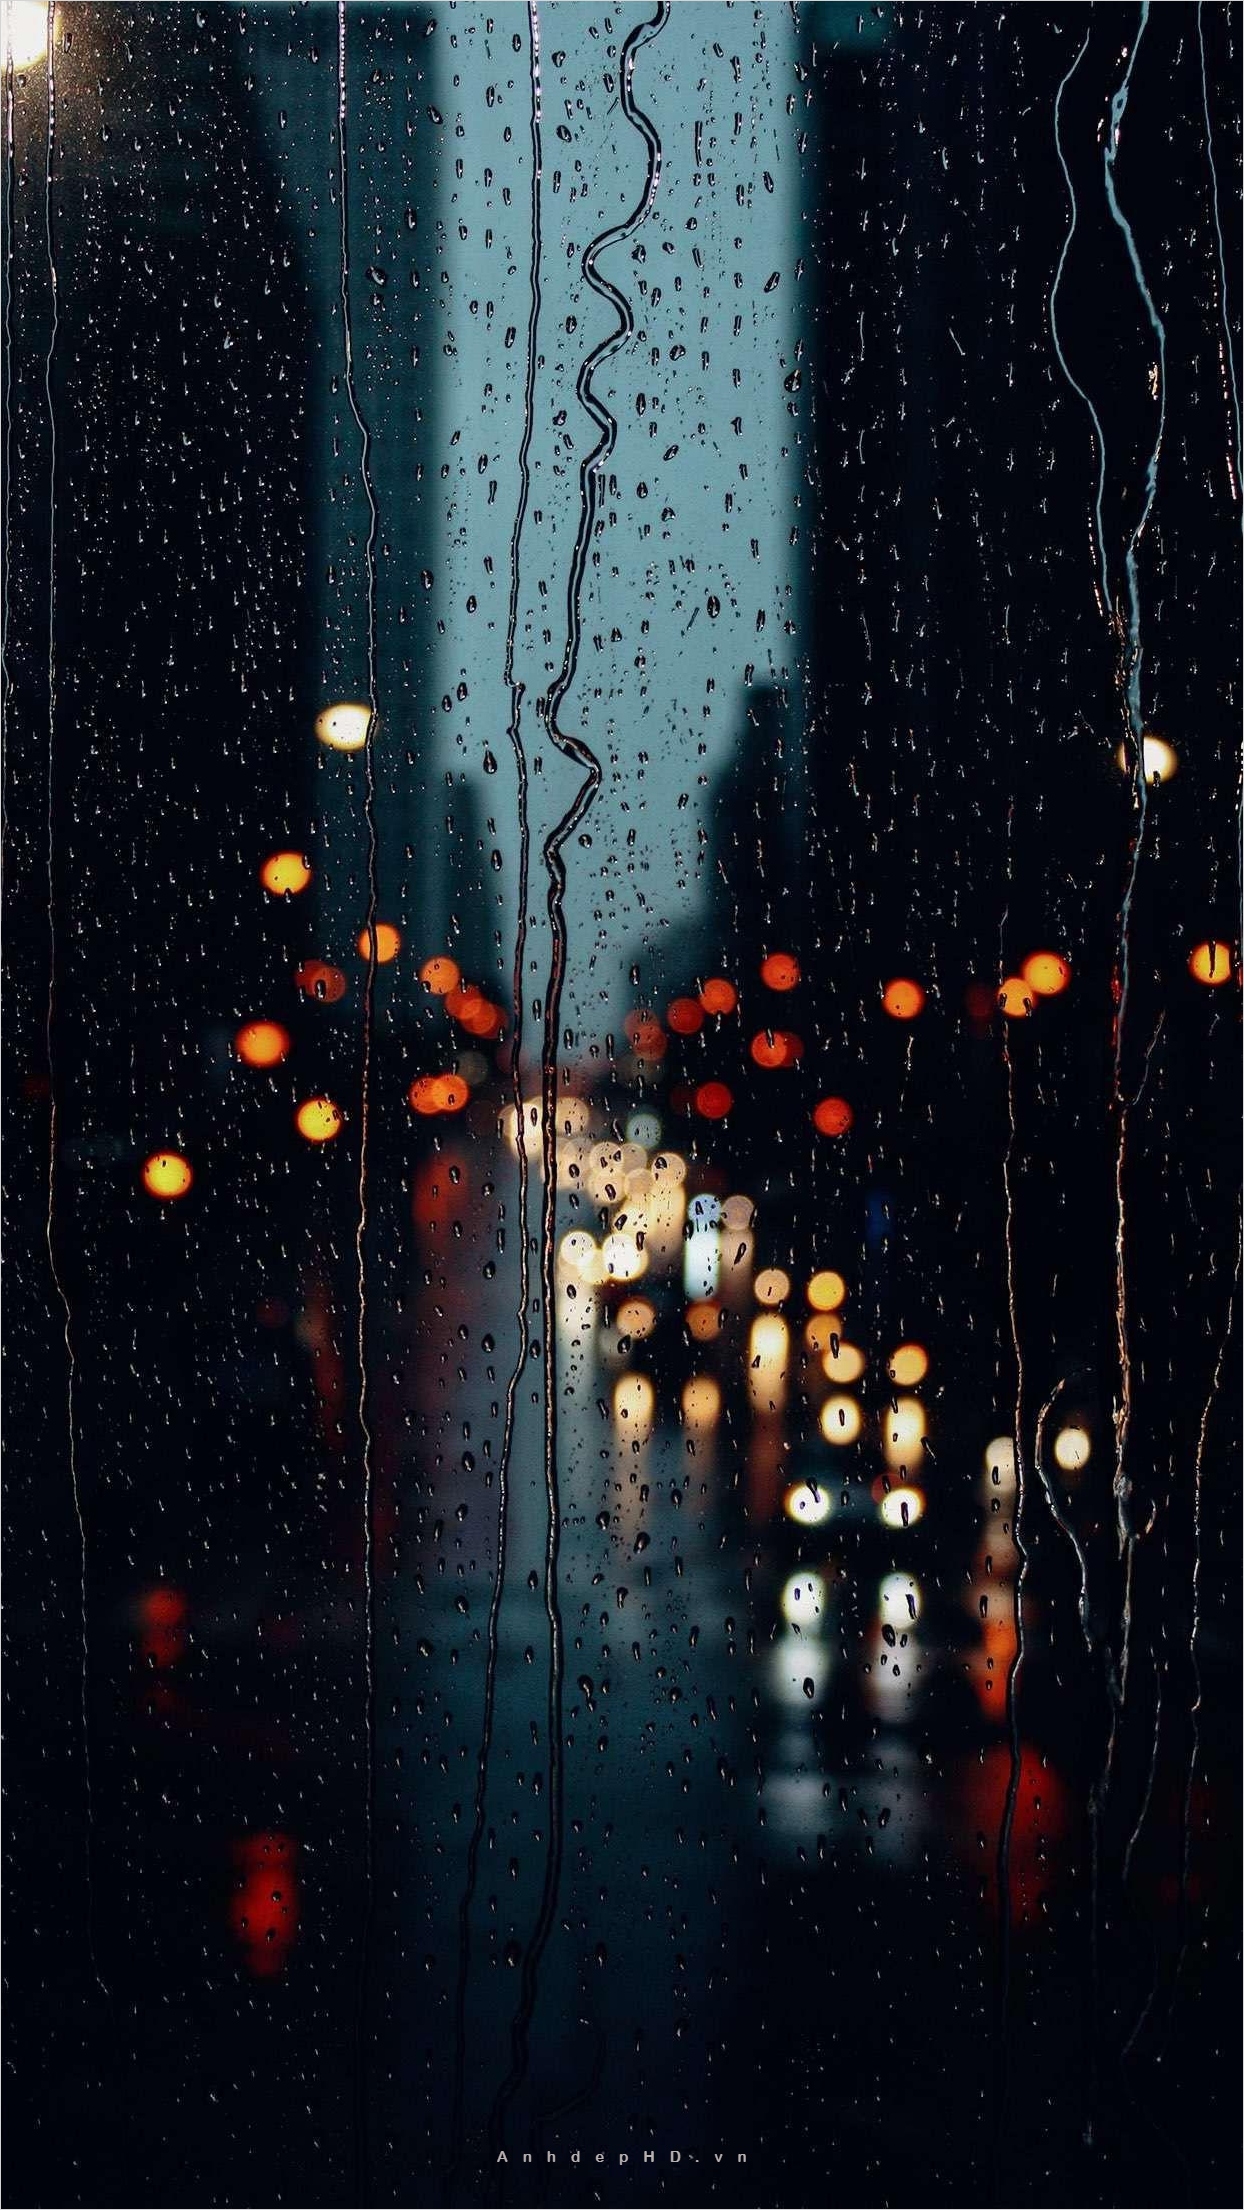 Những khoảnh khắc buồn trong cơn mưa sẽ khiến bạn cảm nhận được sự đậm chất của tâm trạng. Đón xem ảnh buồn tâm trạng mưa để trải nghiệm những cảm xúc sâu lắng trong đó.